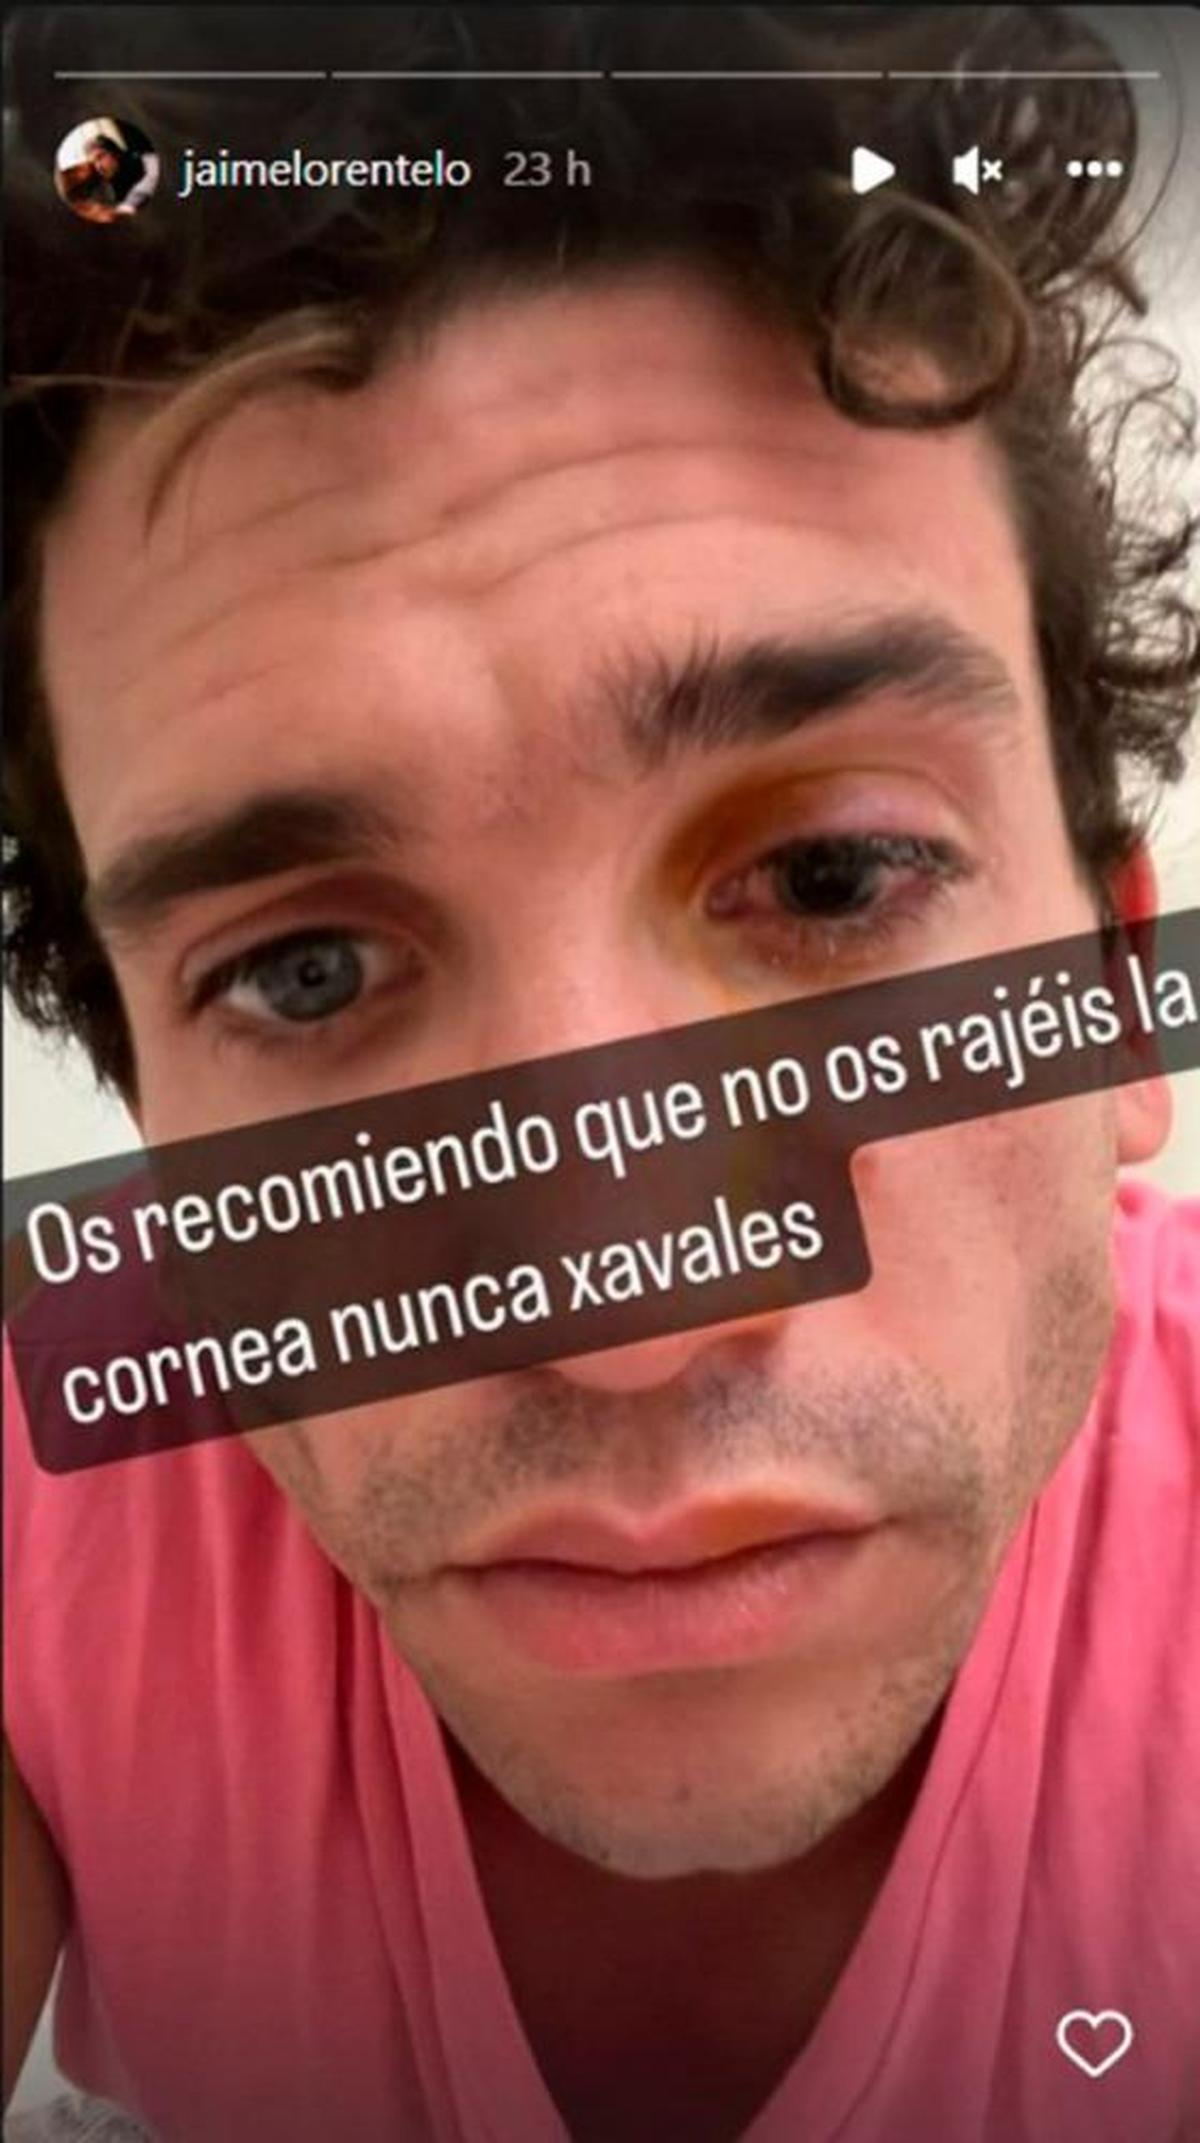 Historia en Instagram de Jaime Lorente mostrando su lesión. | INSTRAGRAM JAIME LORENTE